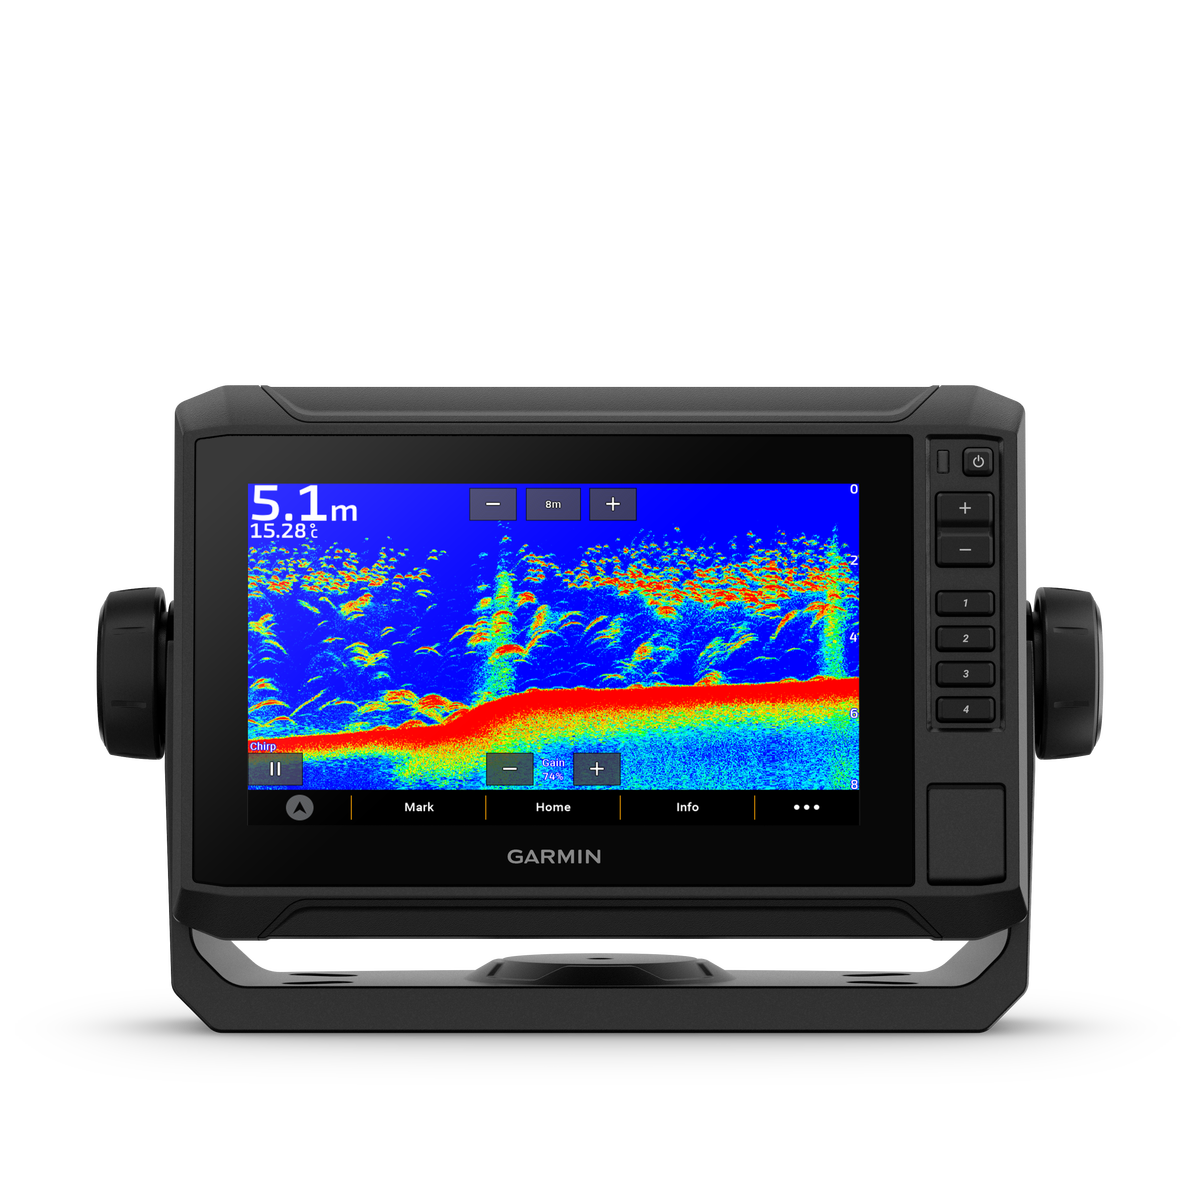 Garmin Echomap UHD2 72sv kaartplotter / fishfinder zonder transducer